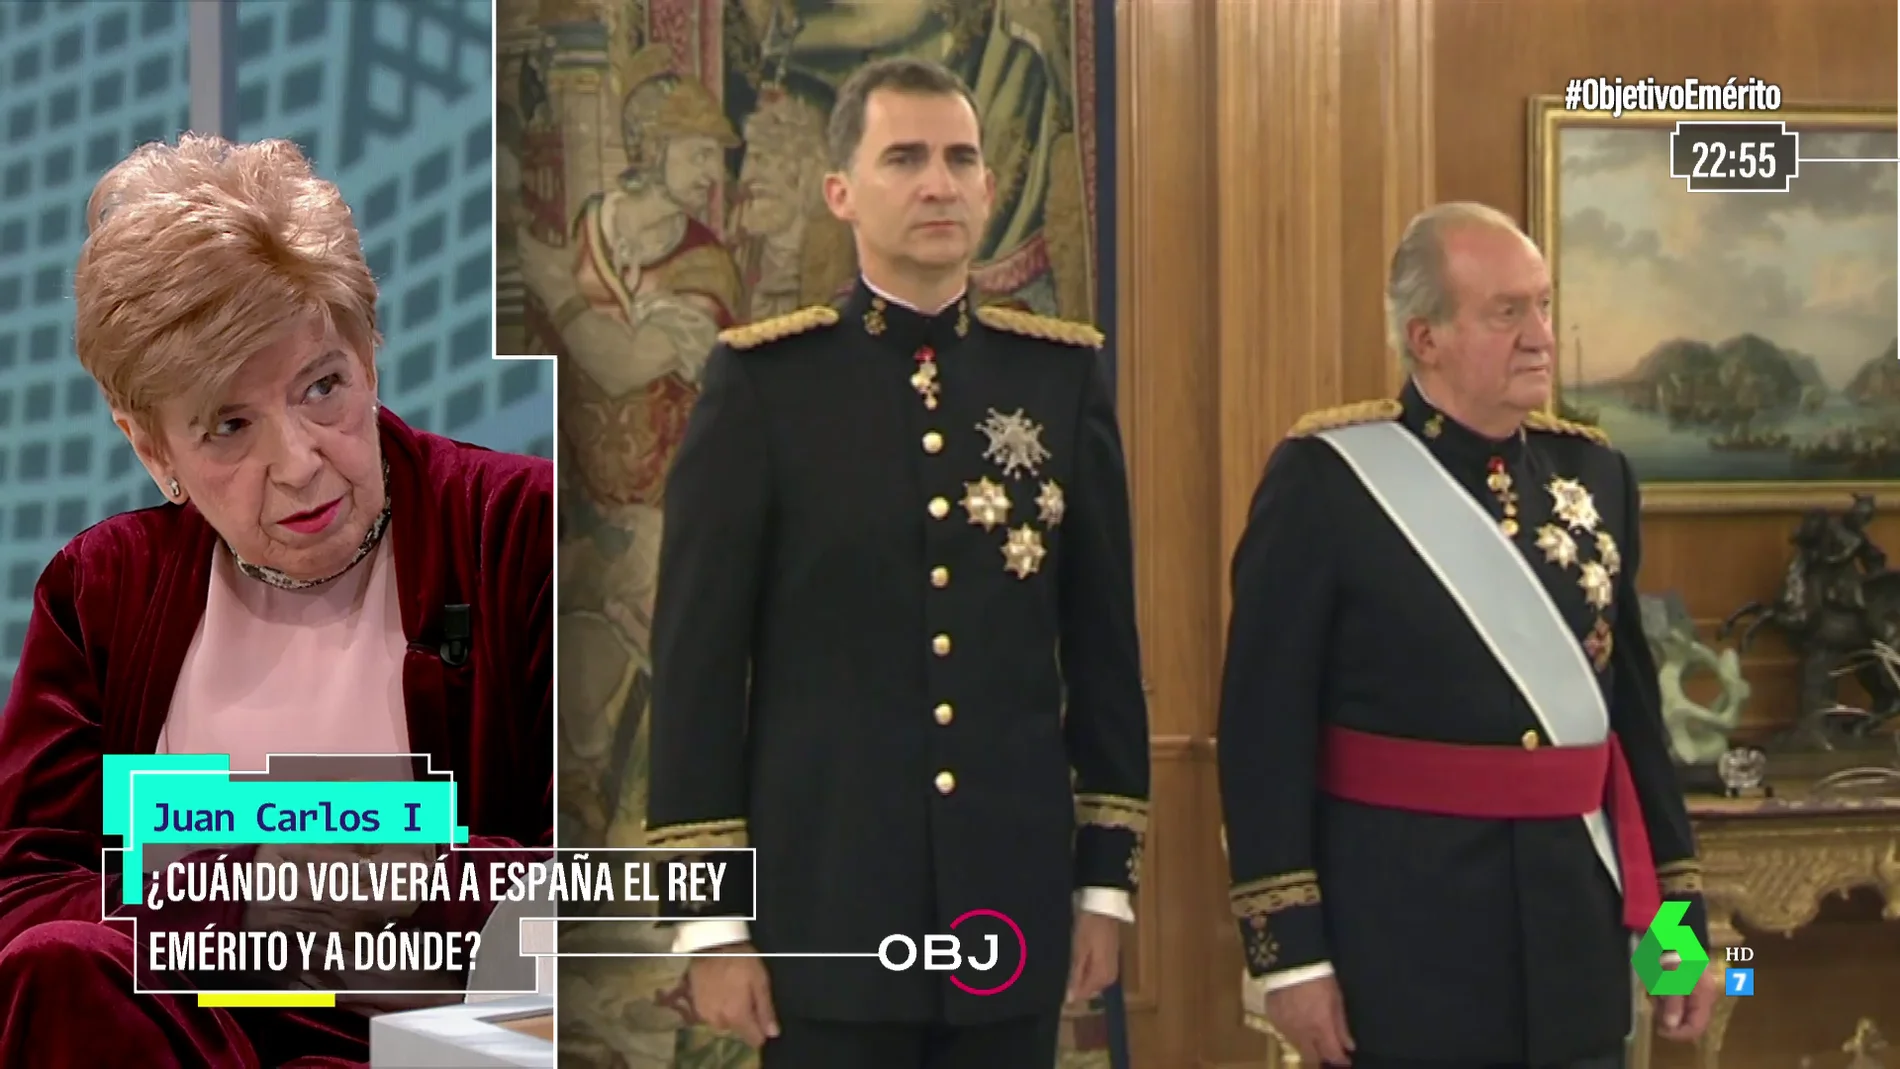  ¿Está rota la relación entre Juan Carlos I y Felipe VI? Pilar Urbano responde en El Objetivo